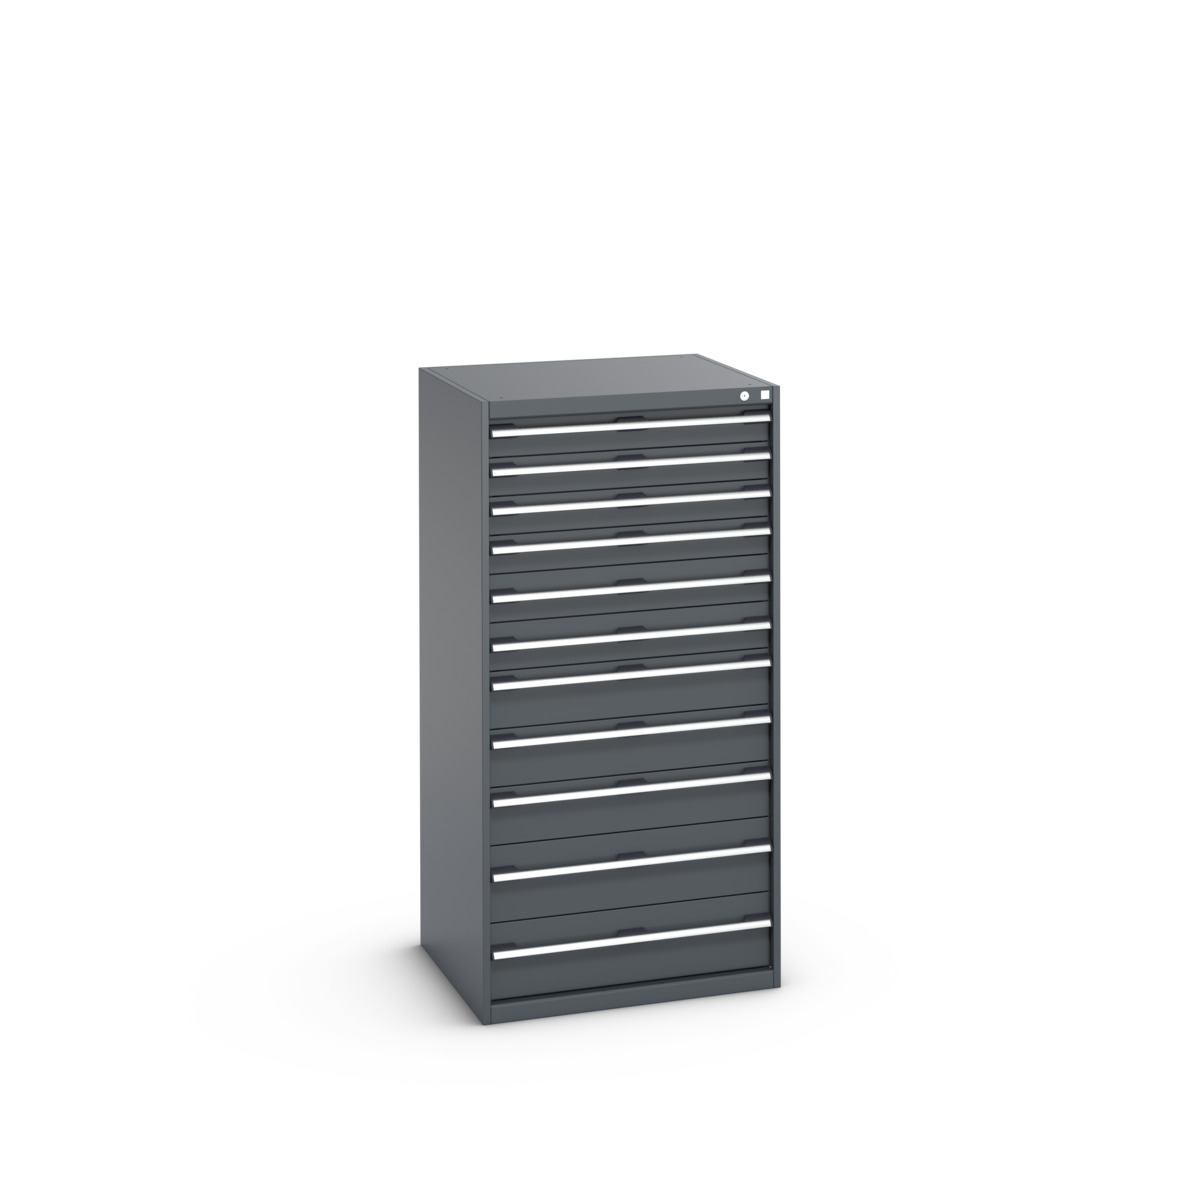 40028042.77V - cubio drawer cabinet